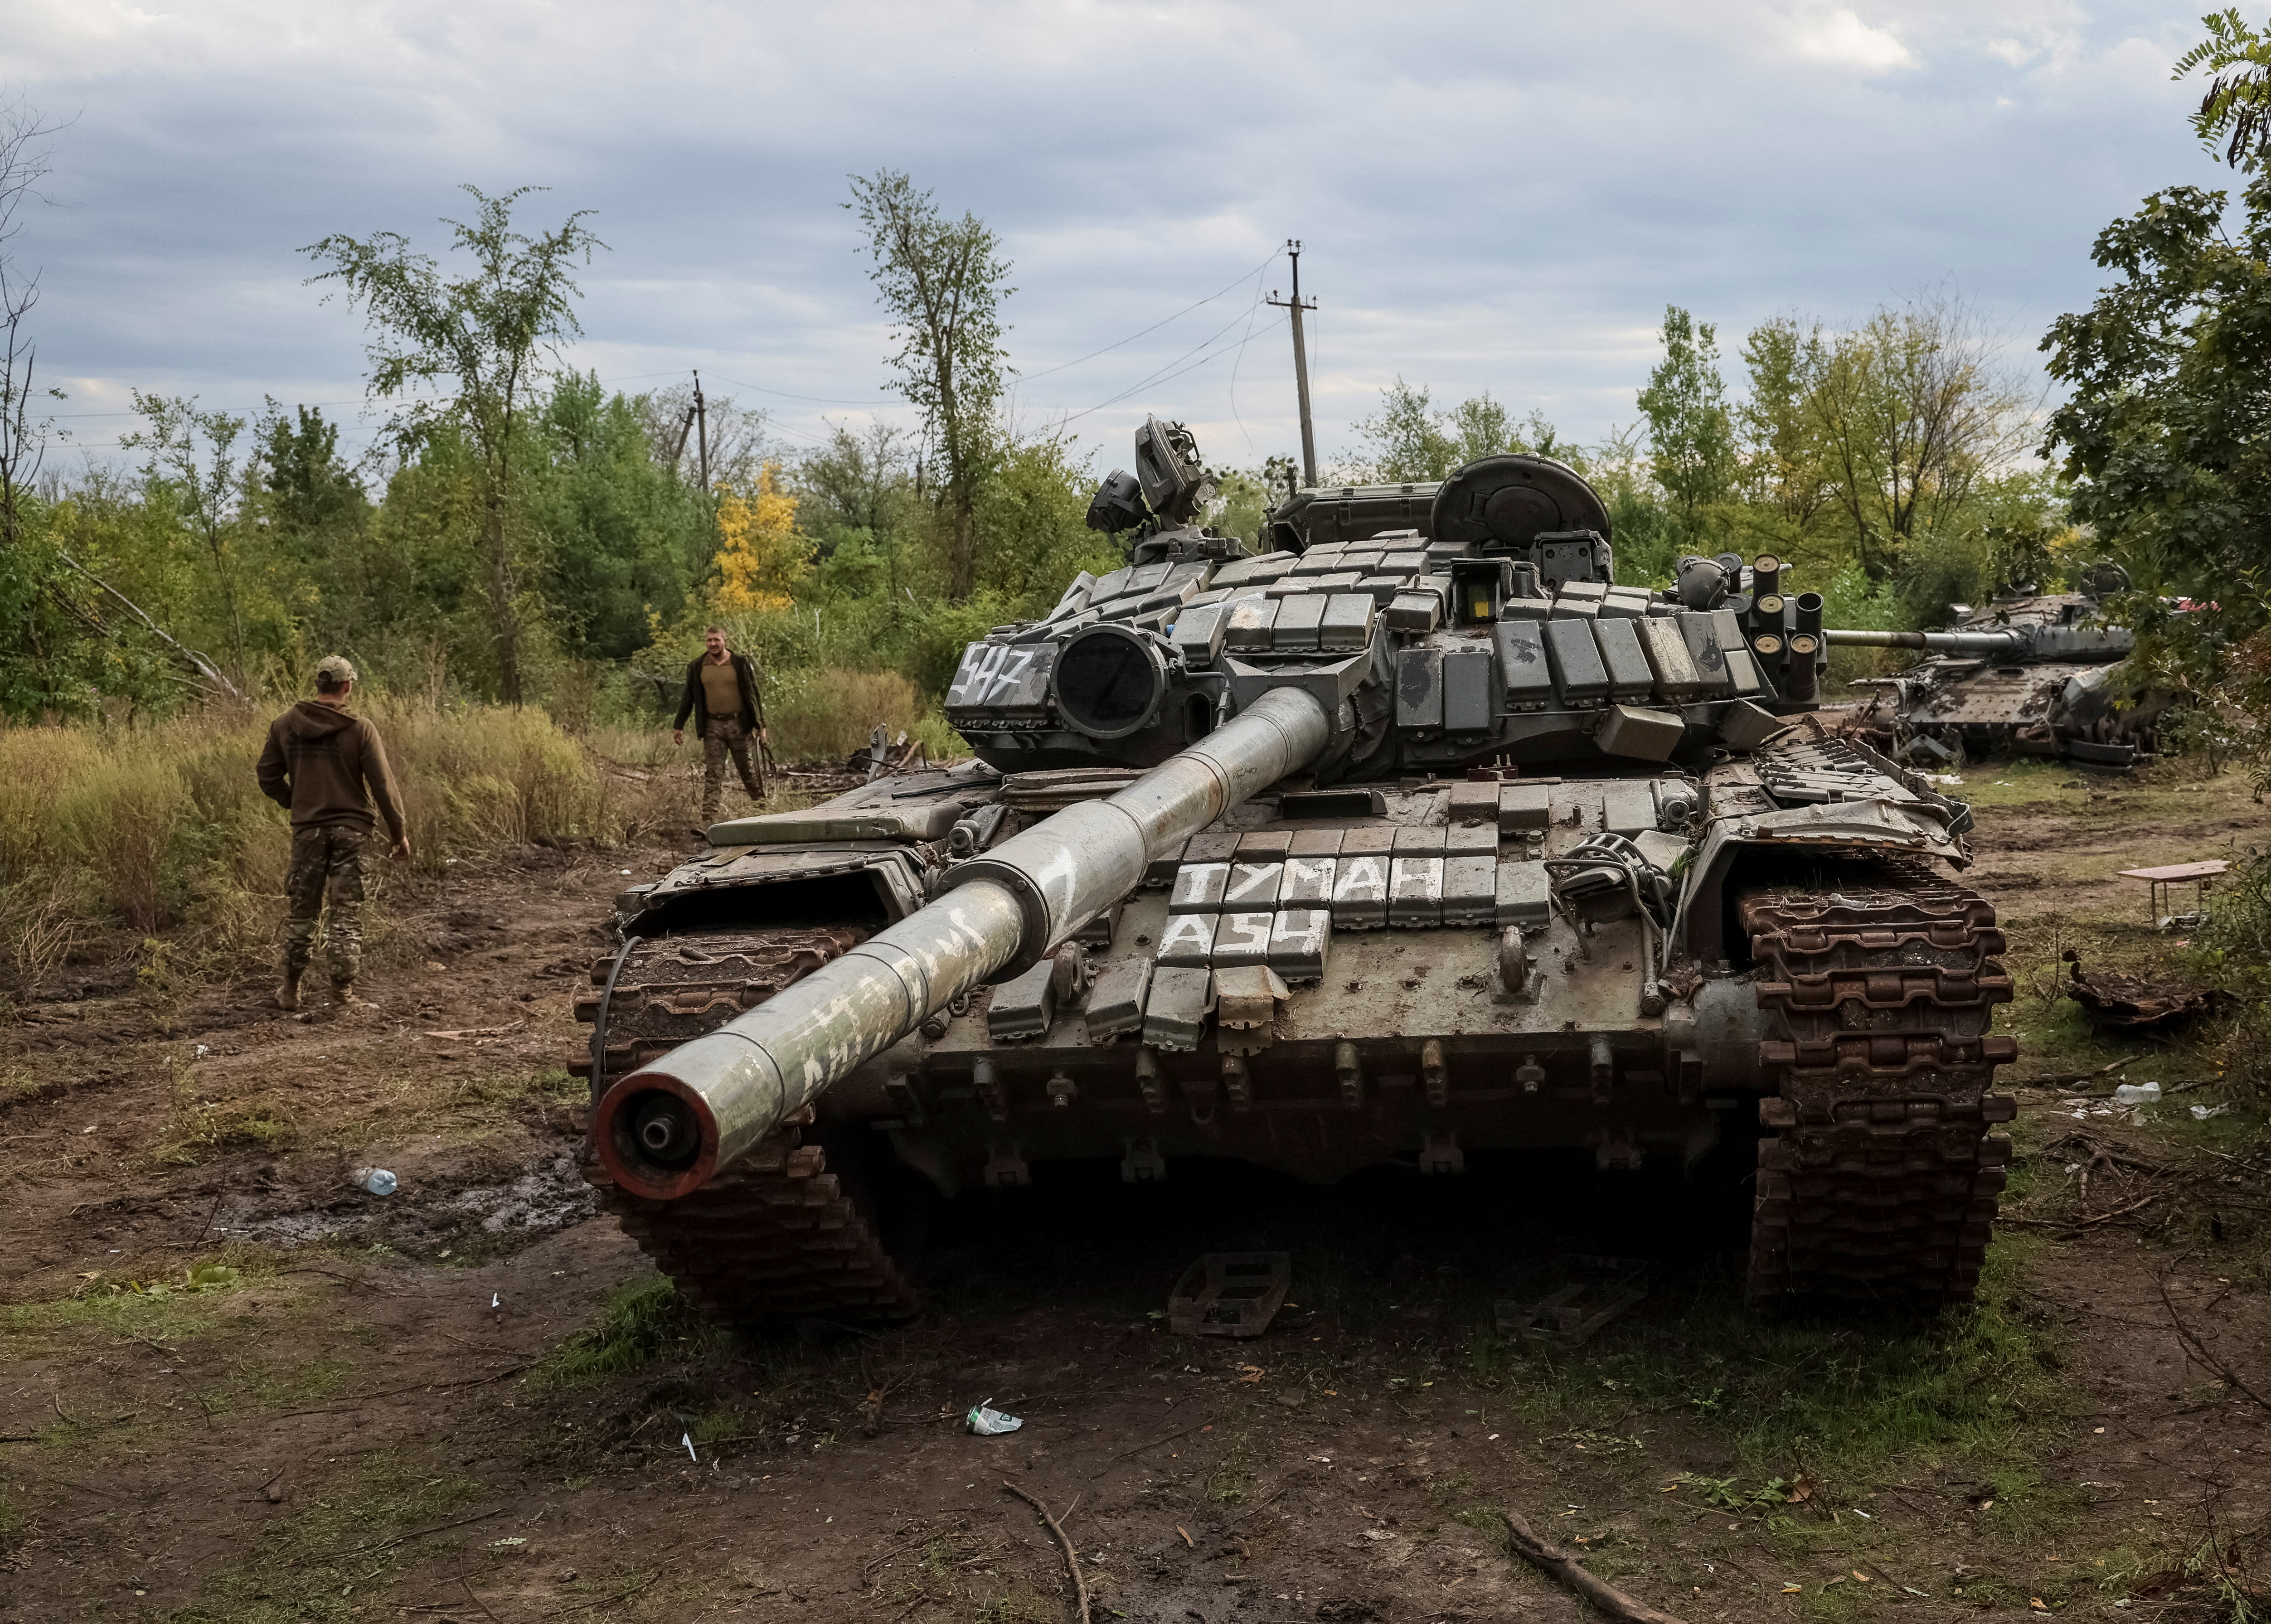 Được trang bị với công nghệ tân tiến và trang bị cực kỳ mạnh mẽ, xe tăng T-90 là biểu tượng của sức mạnh quân sự Nga. Nếu bạn là một người yêu thích xe tăng, hãy đến và tìm hiểu về xe tăng T-90 trong hình ảnh đầy ấn tượng này.